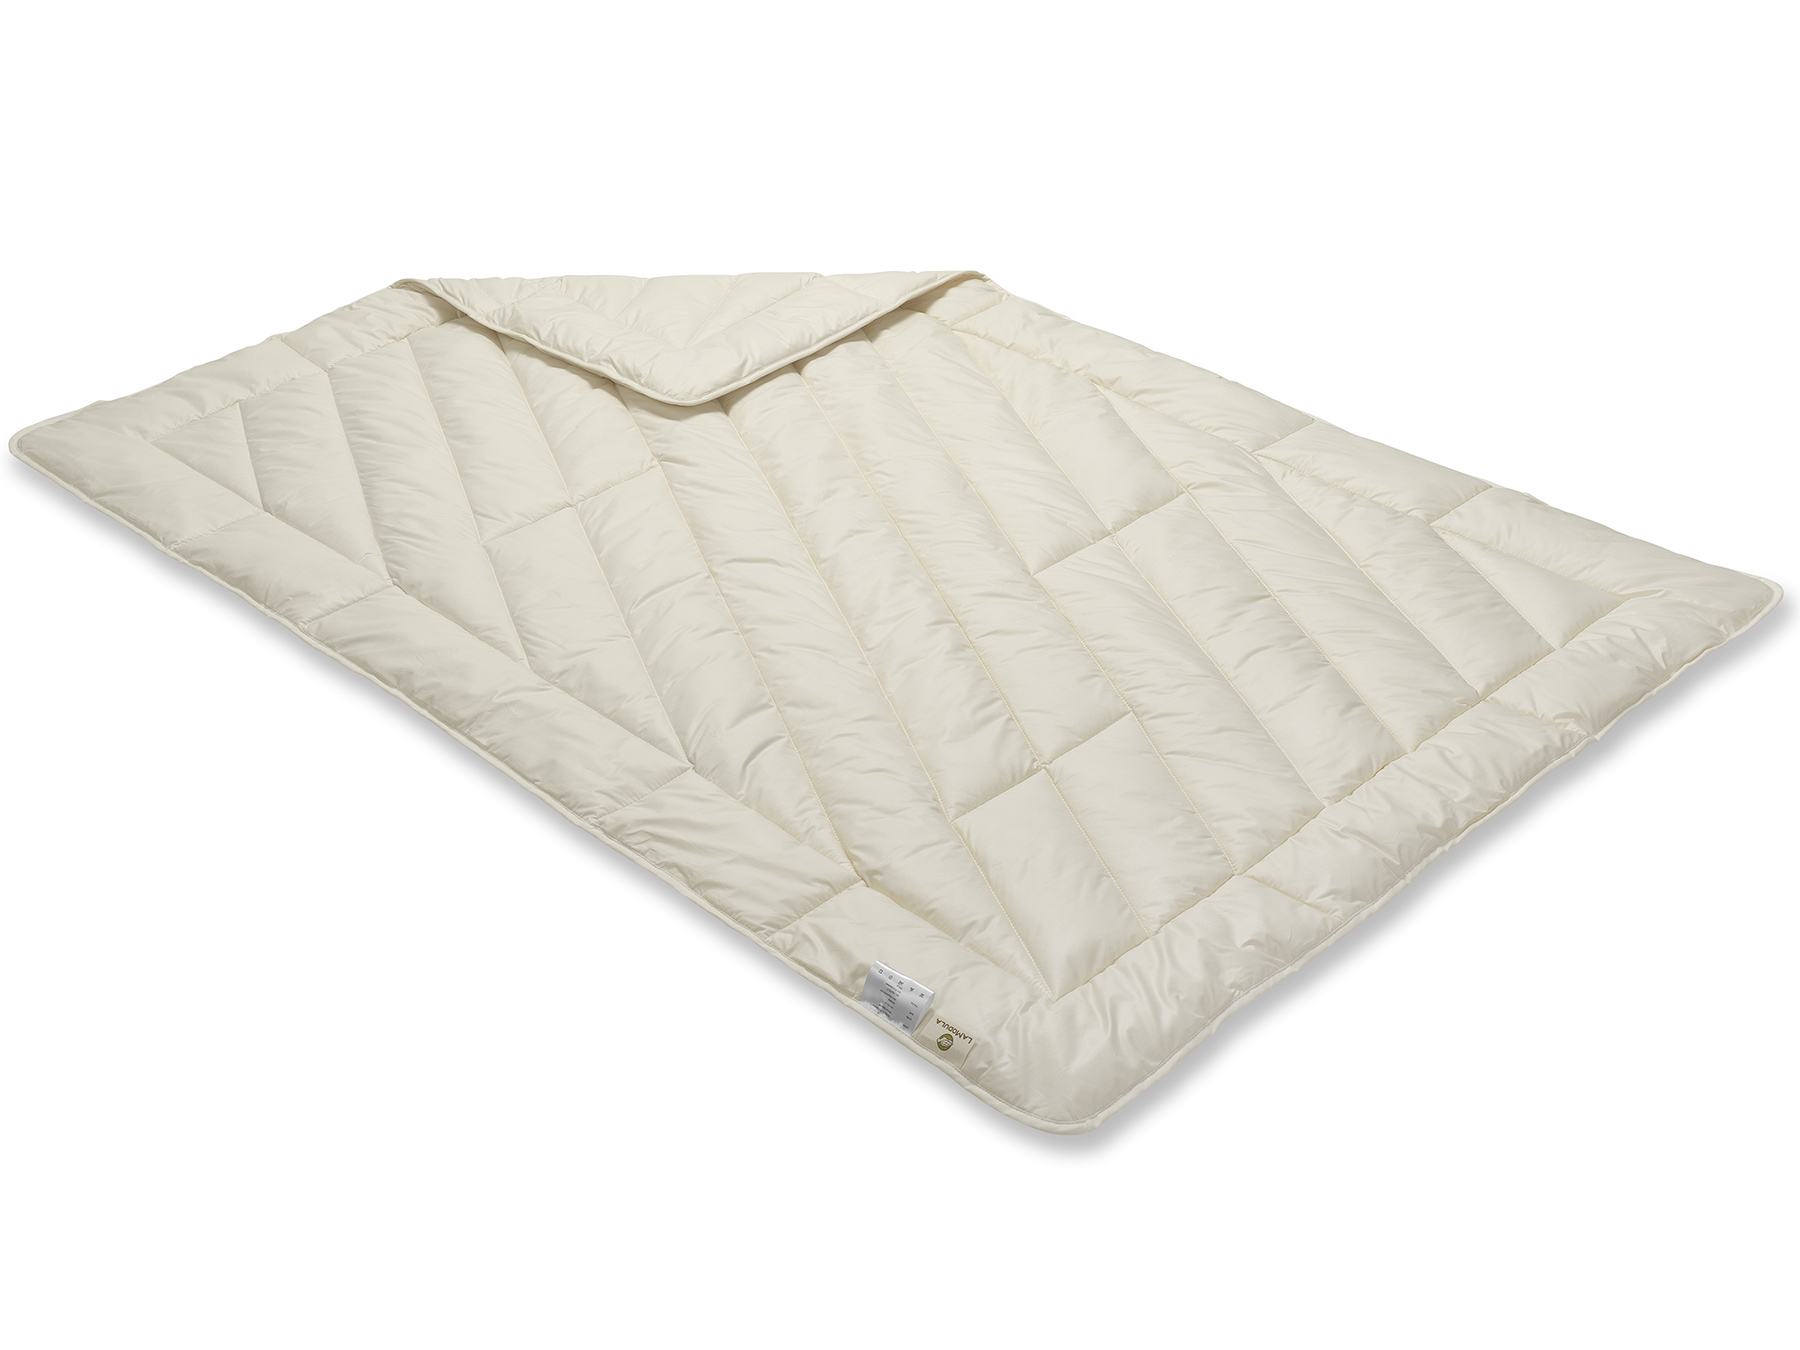 Diese Decke wird sorgfältig mit der Einnadeltechnik hergestellt und schimmert aufgrund der weißen Füllung cremig.